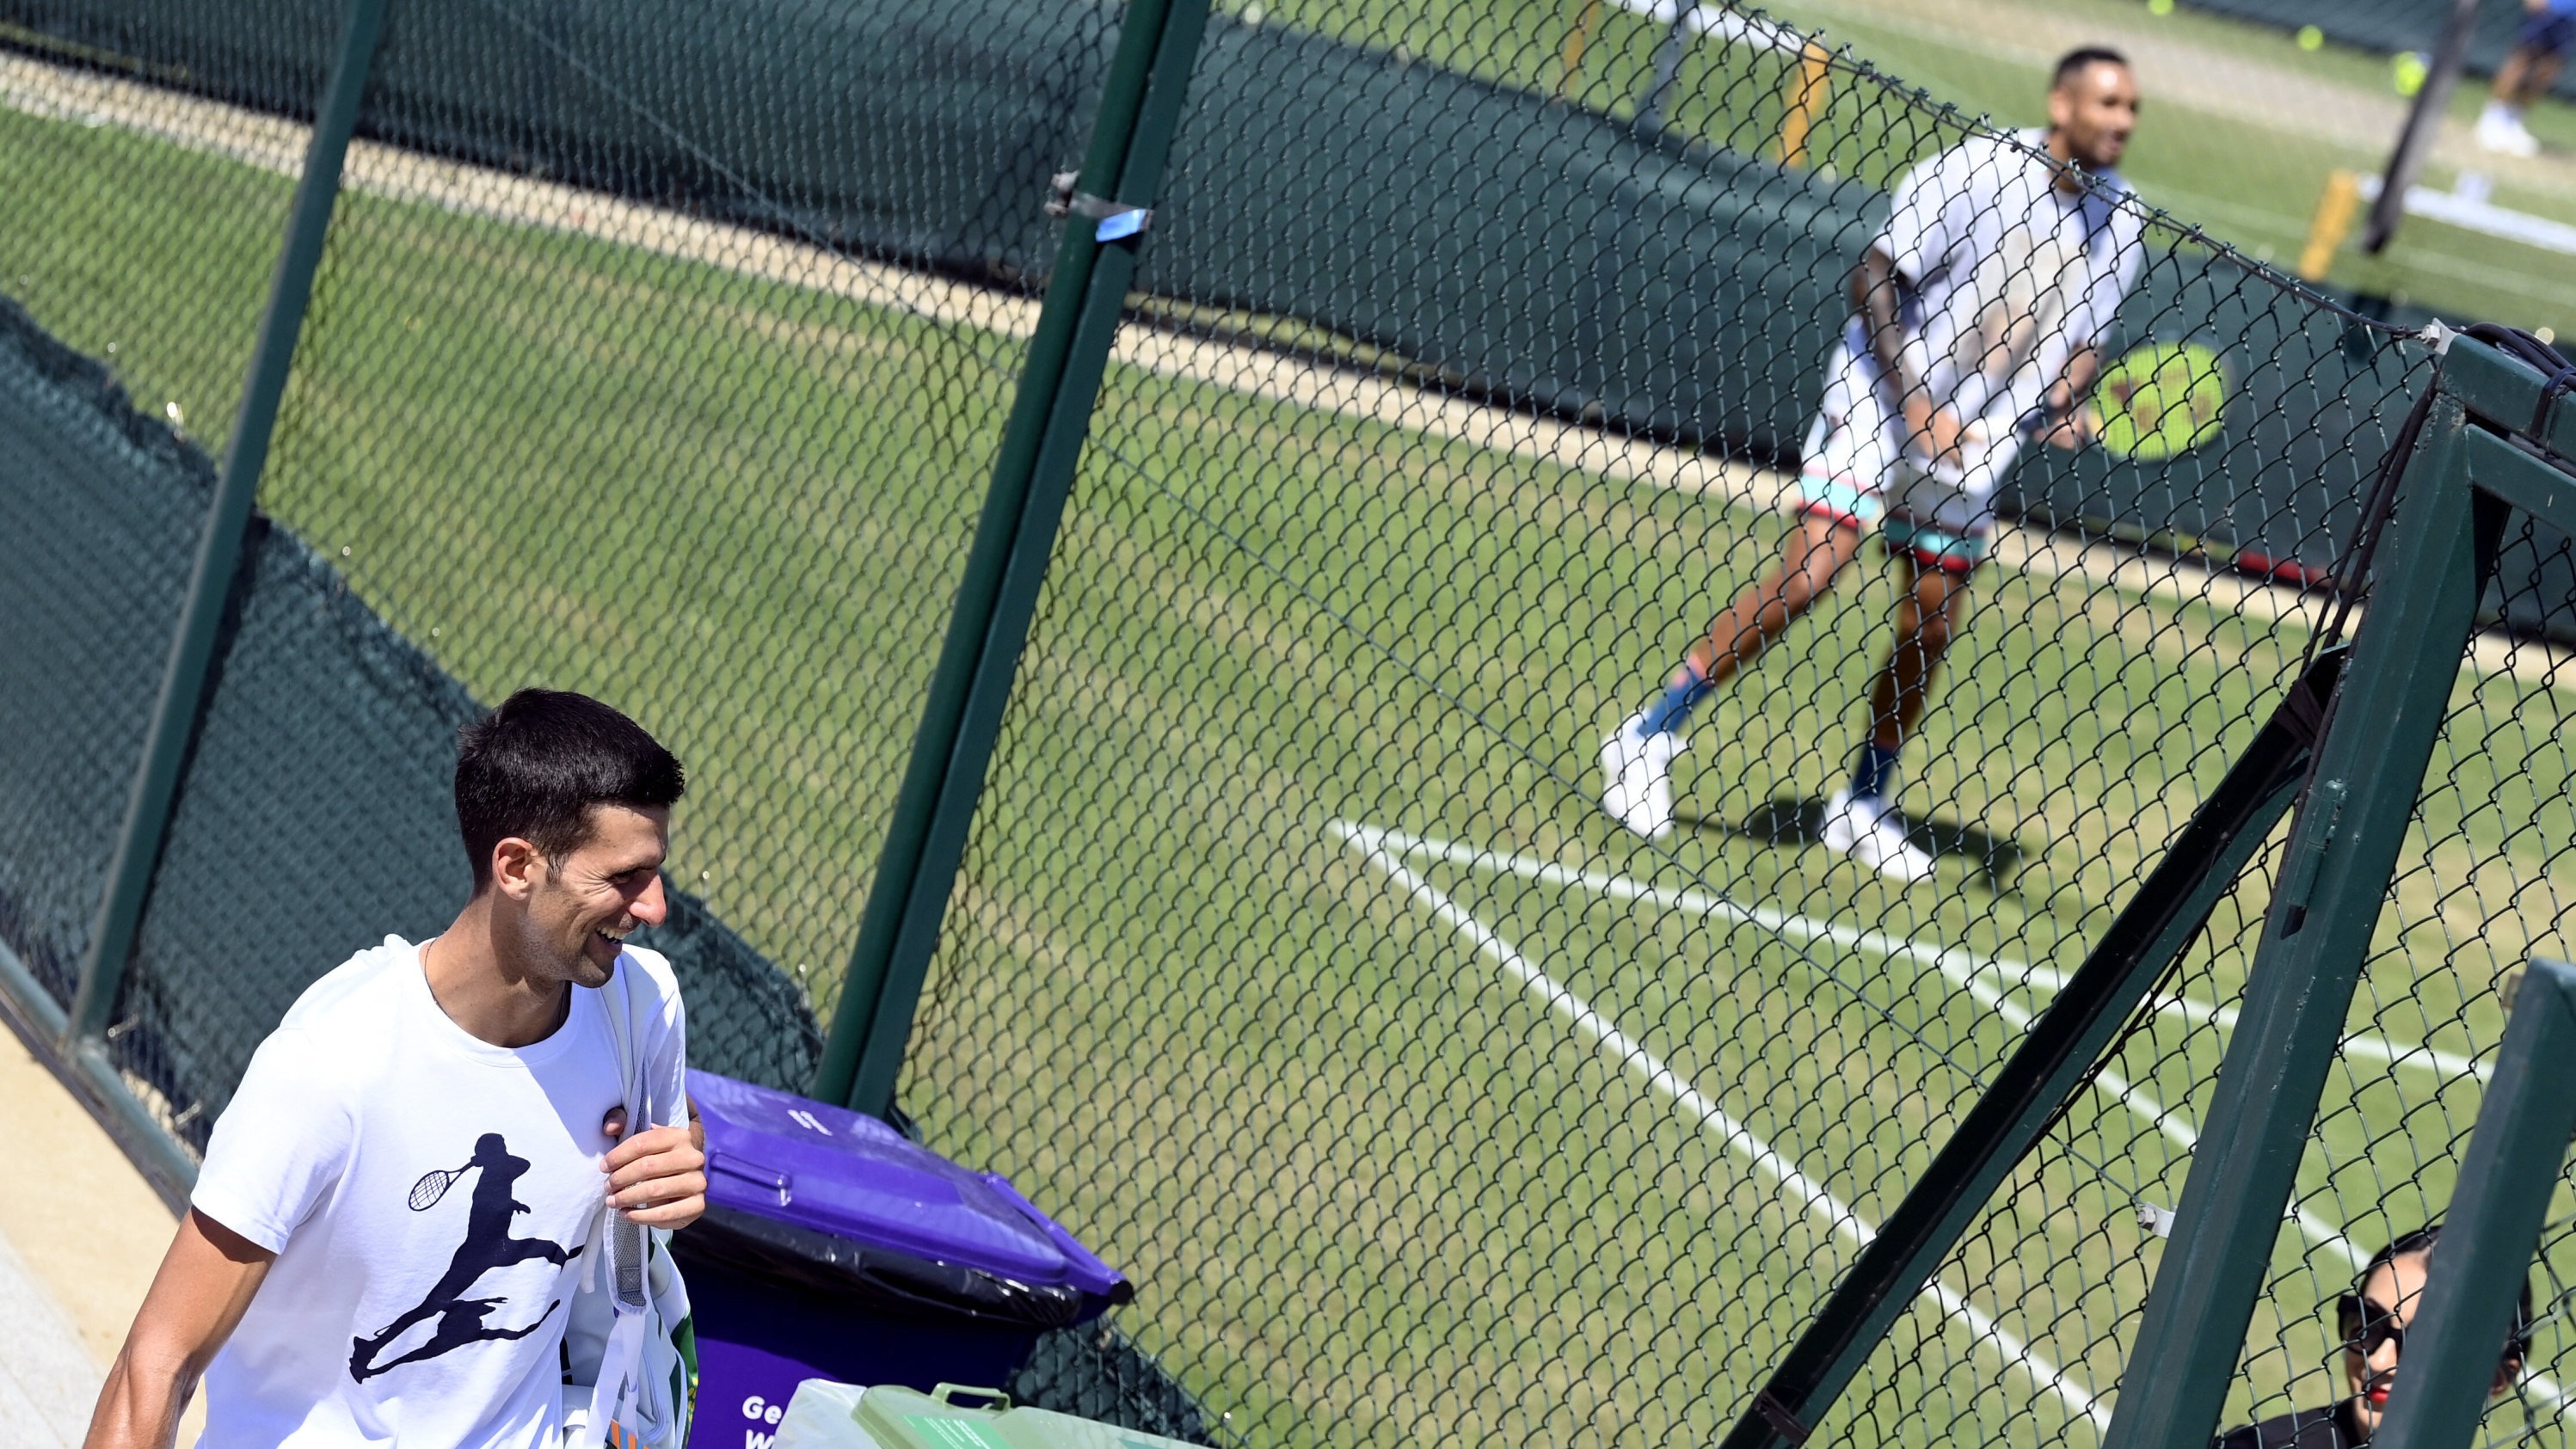 Implacável, Djokovic pune vacilos de Kyrgios e fatura o hepta em Wimbledon  - 10/07/2022 - UOL Esporte